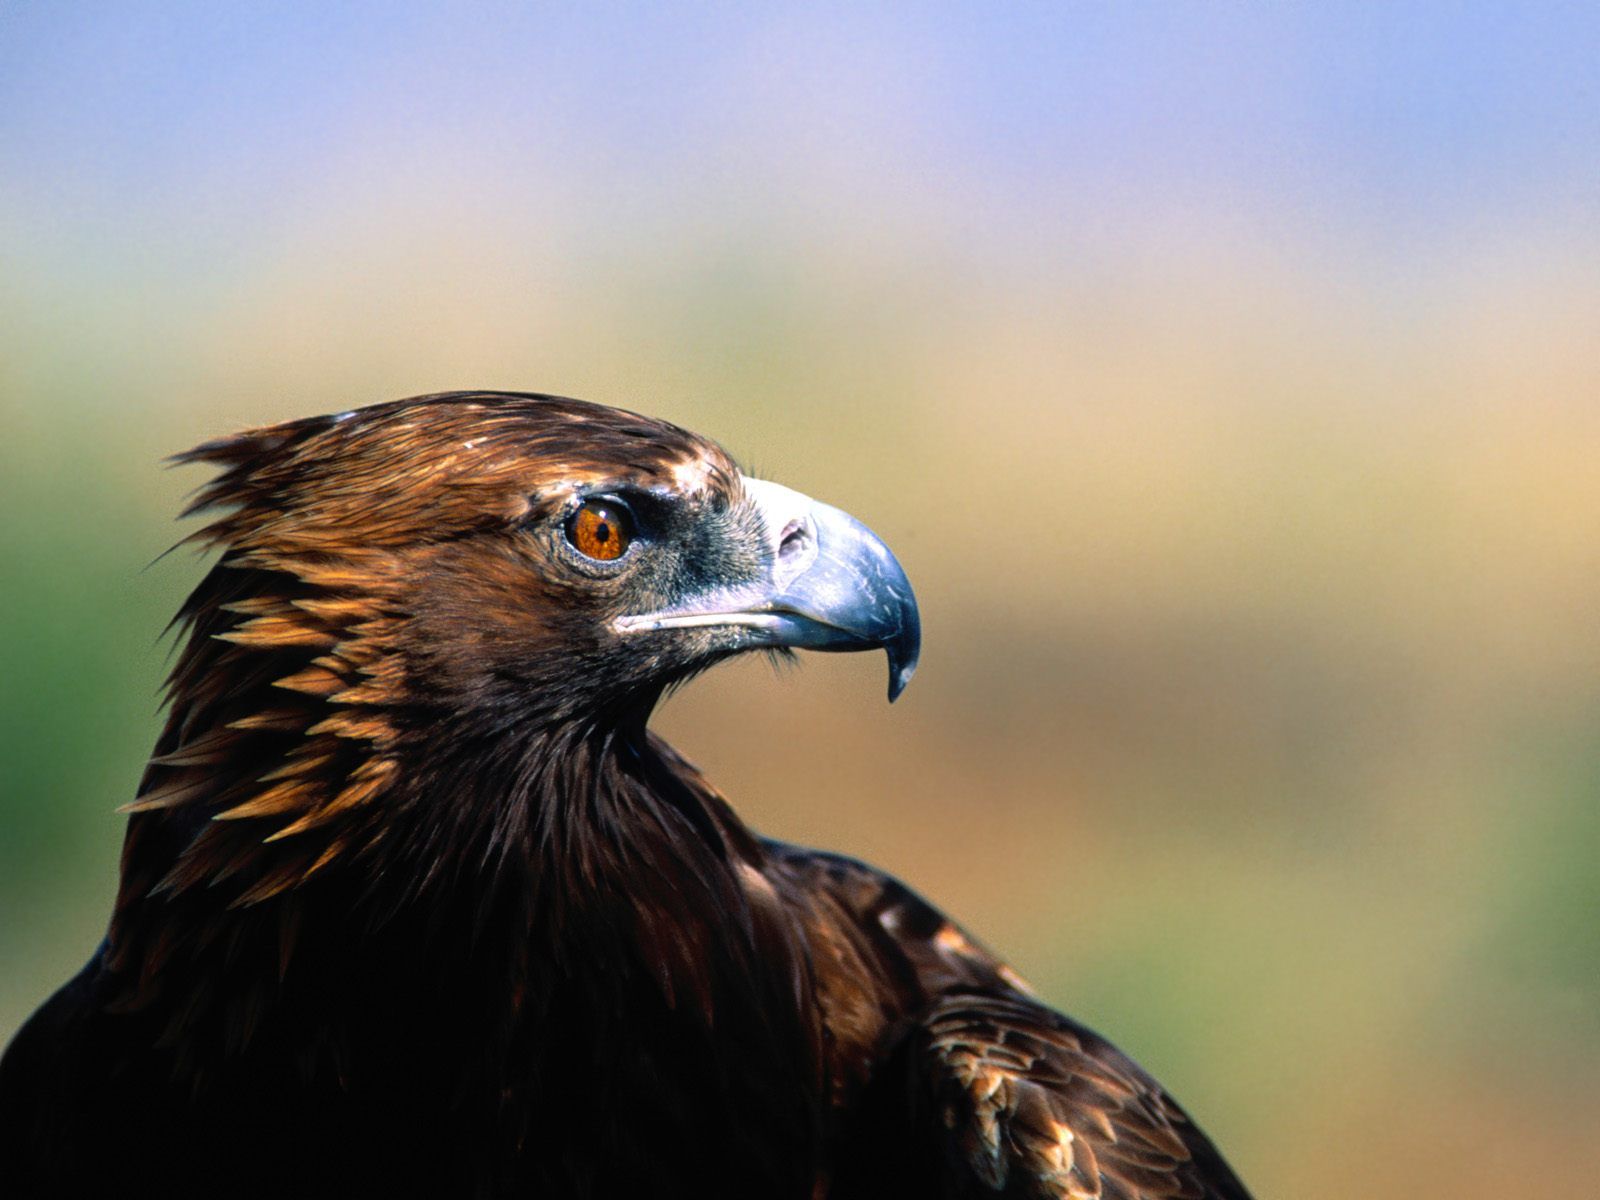 mobile desktop background beautiful eagle images